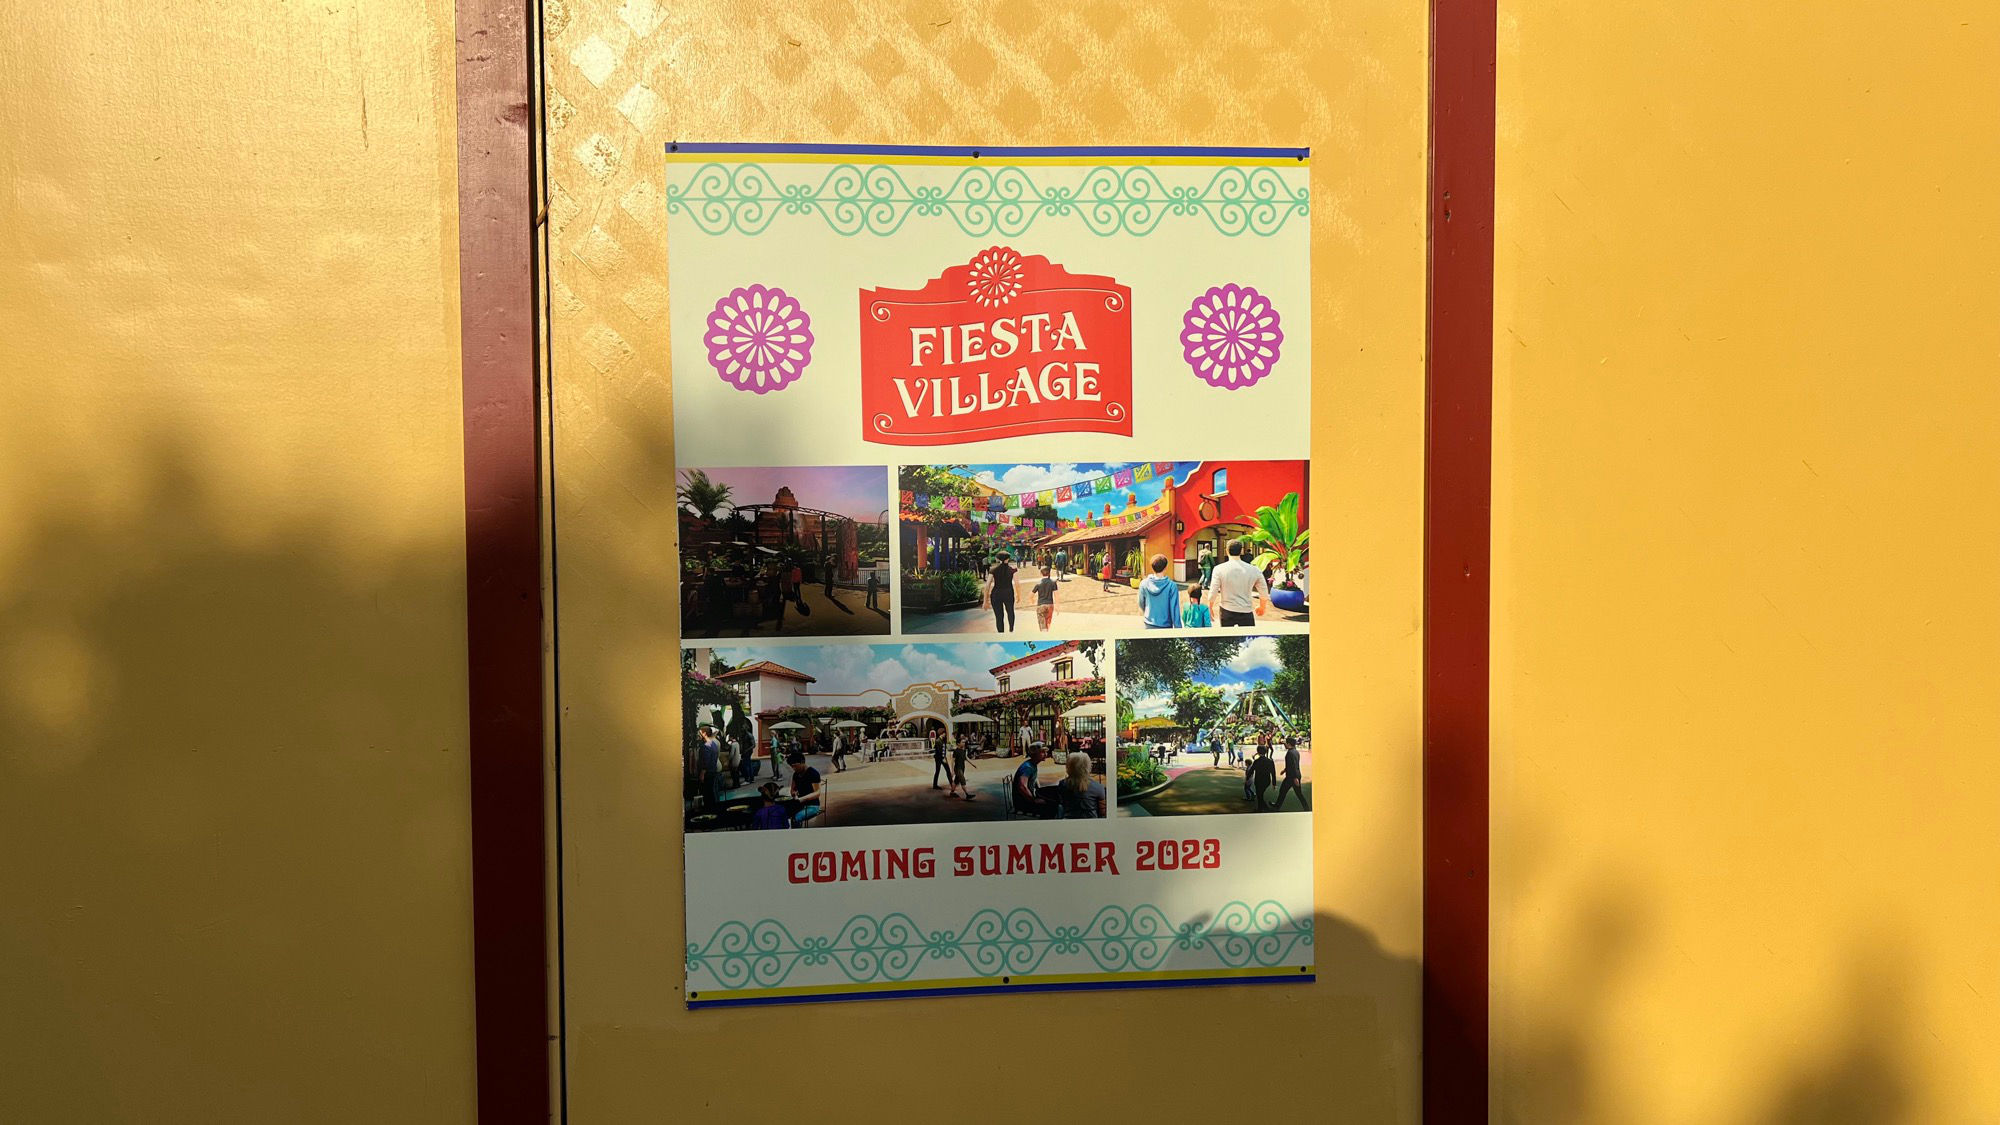 Fiesta Village Summer 2023